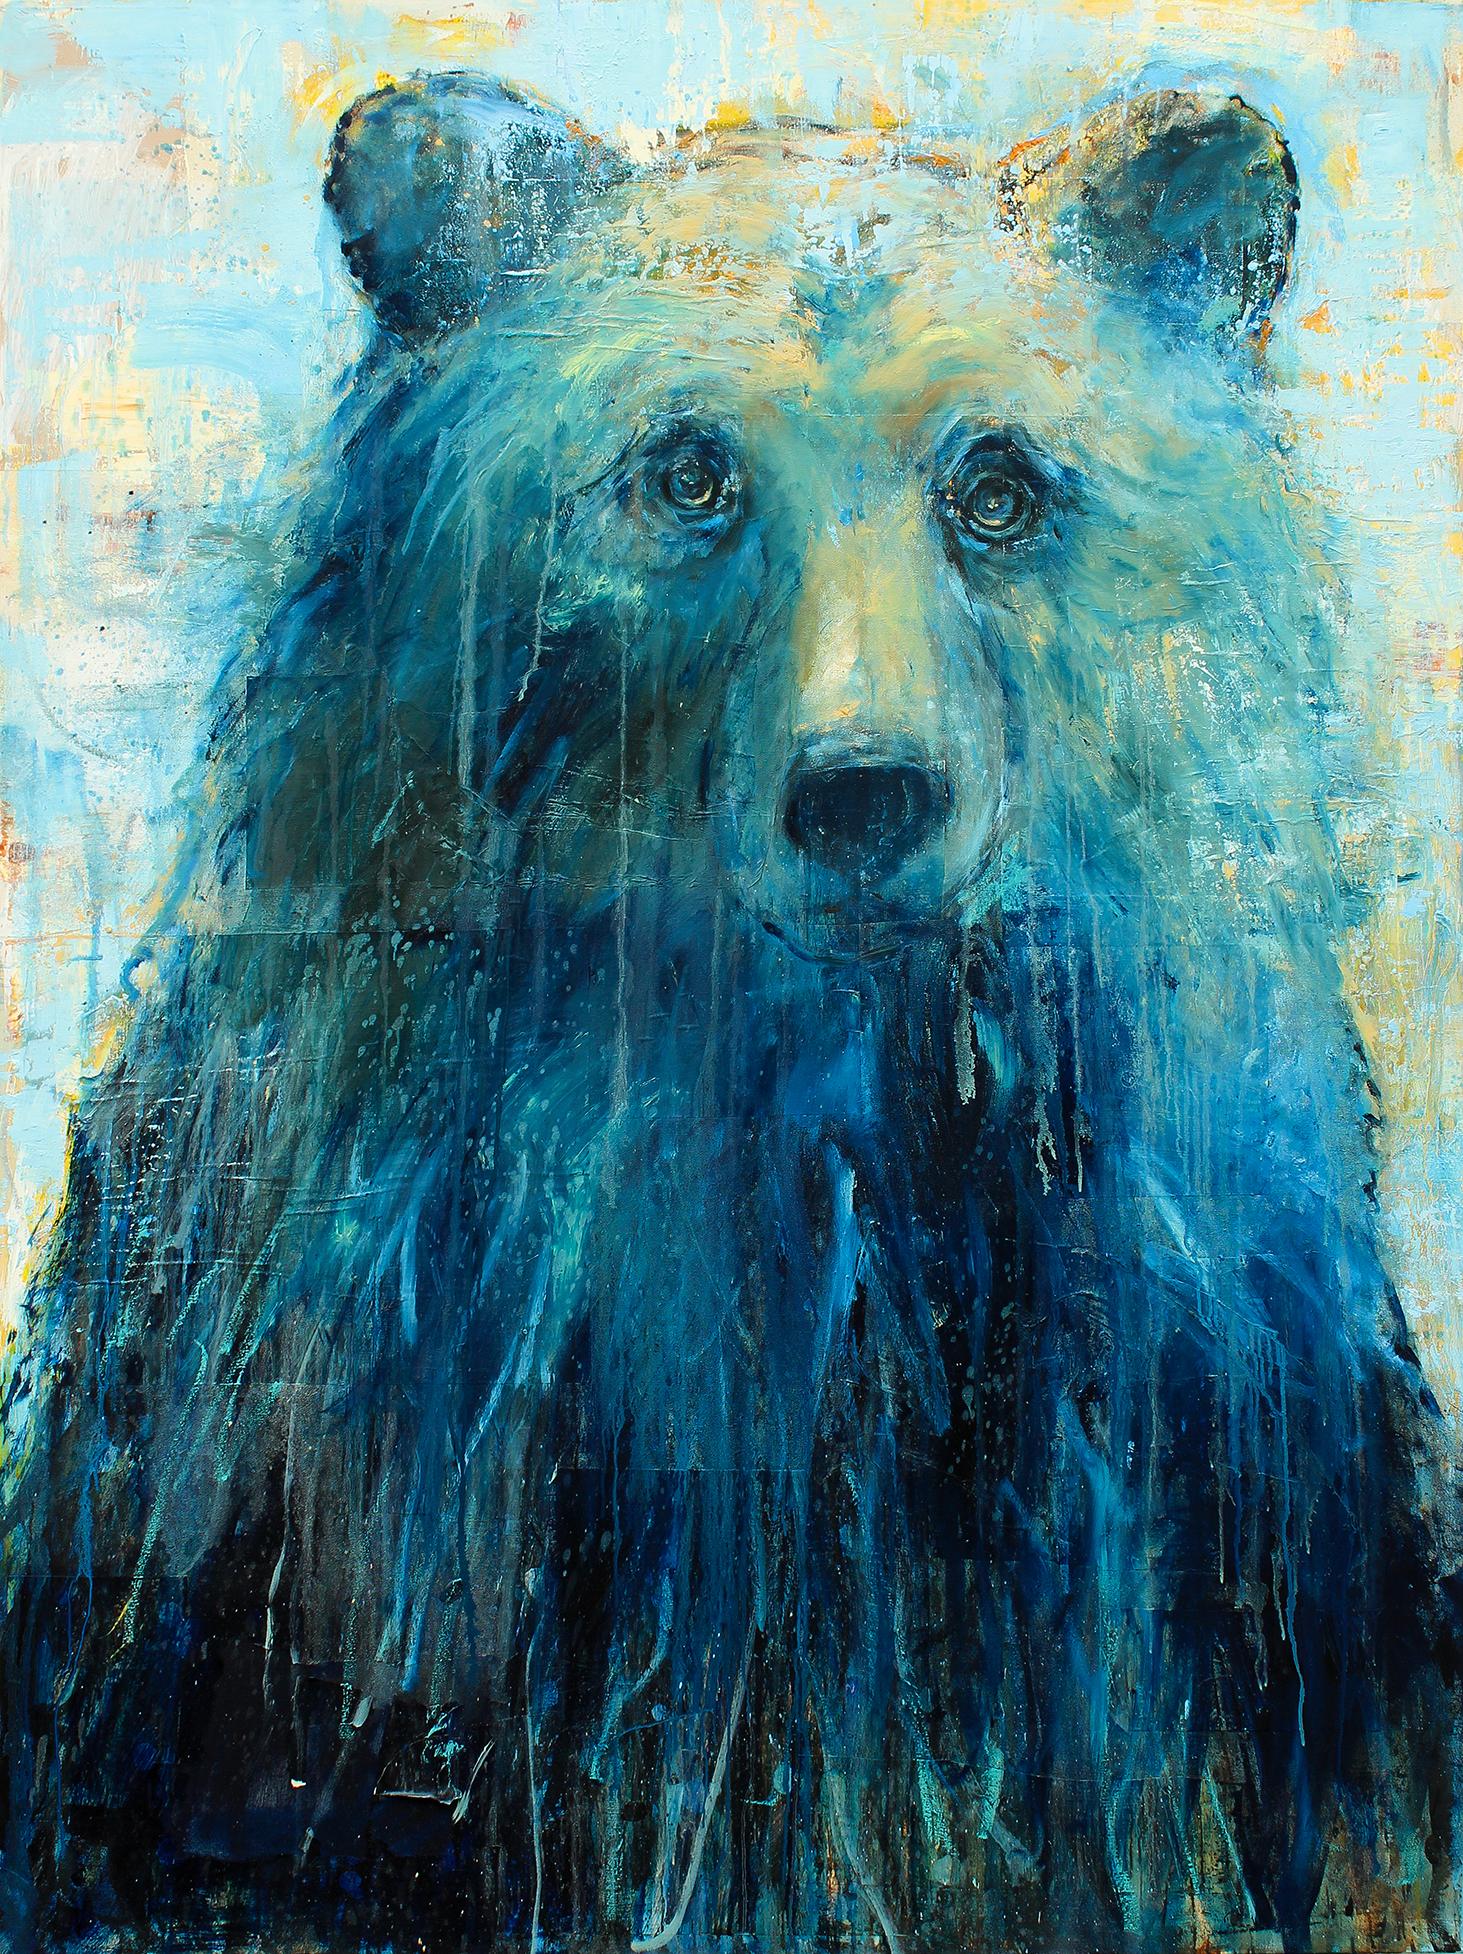 The Blue Hour - Painting by Matt Flint